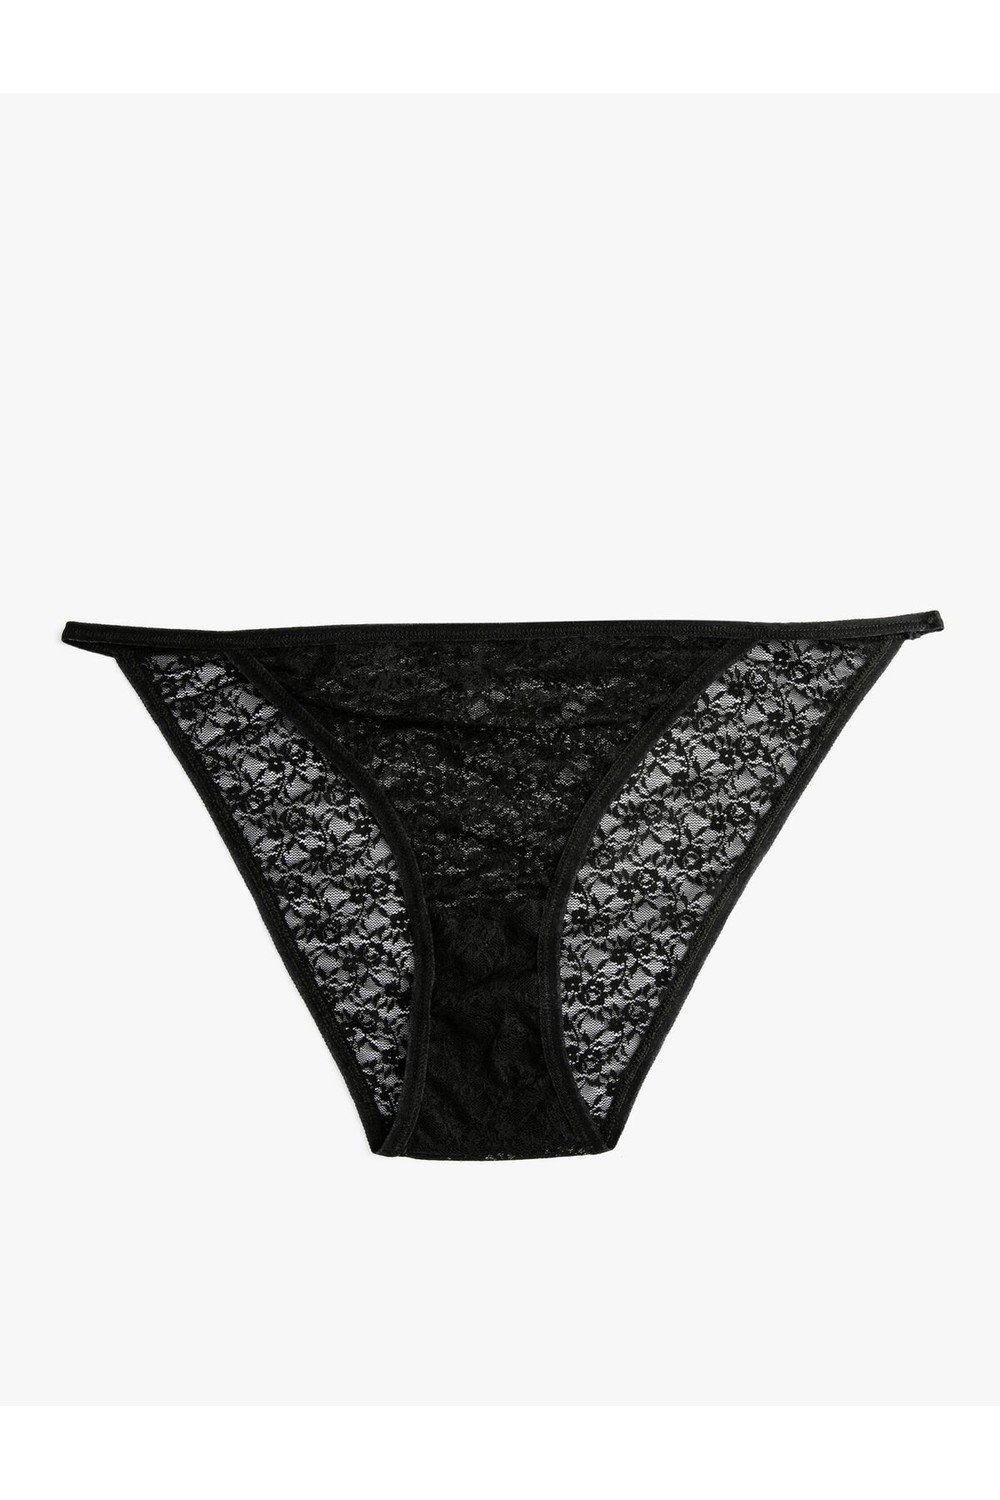 Koton Lace Briefs Normal Waist Panties